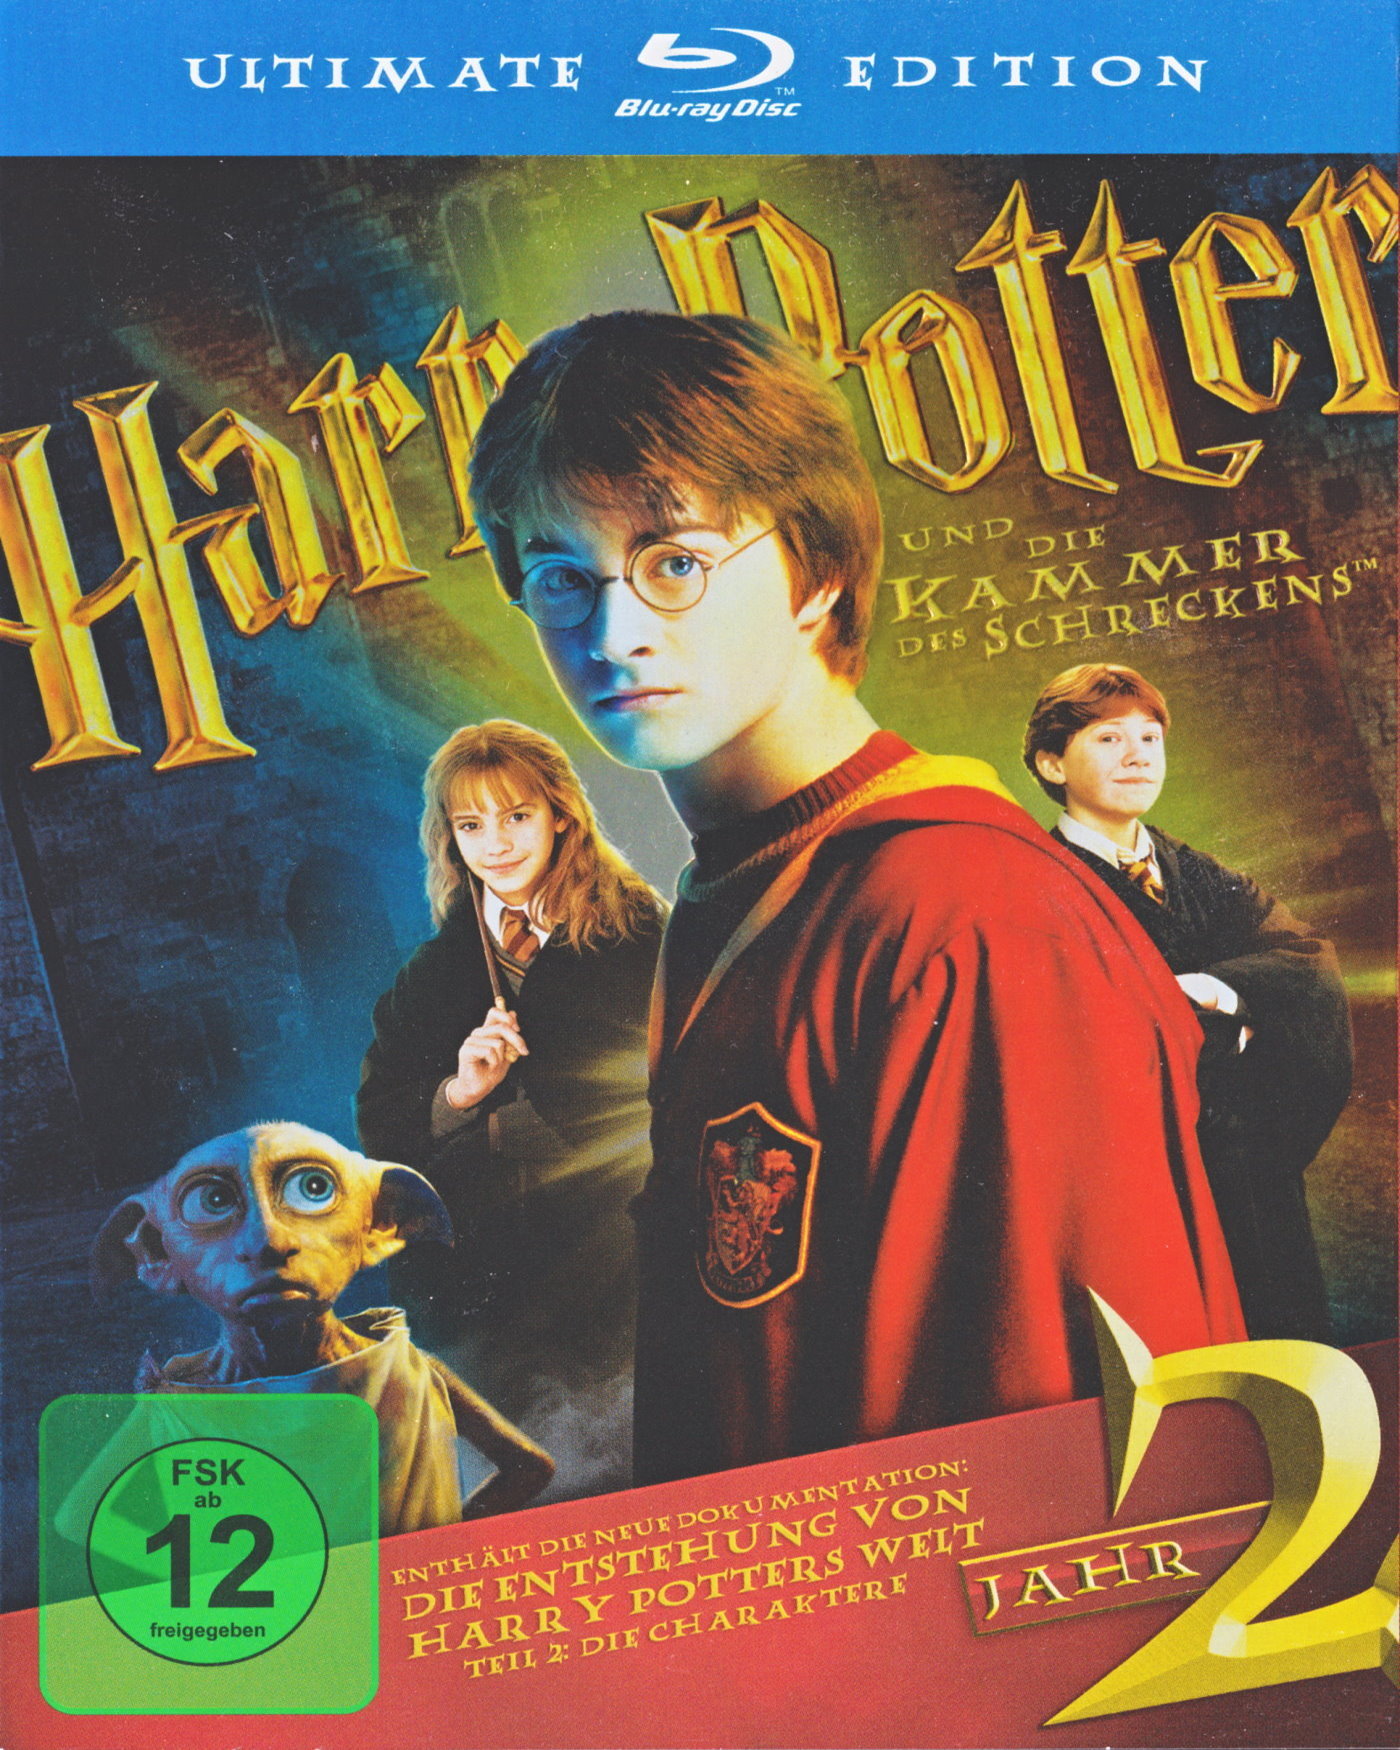 Cover - Harry Potter und die Kammer des Schreckens.jpg